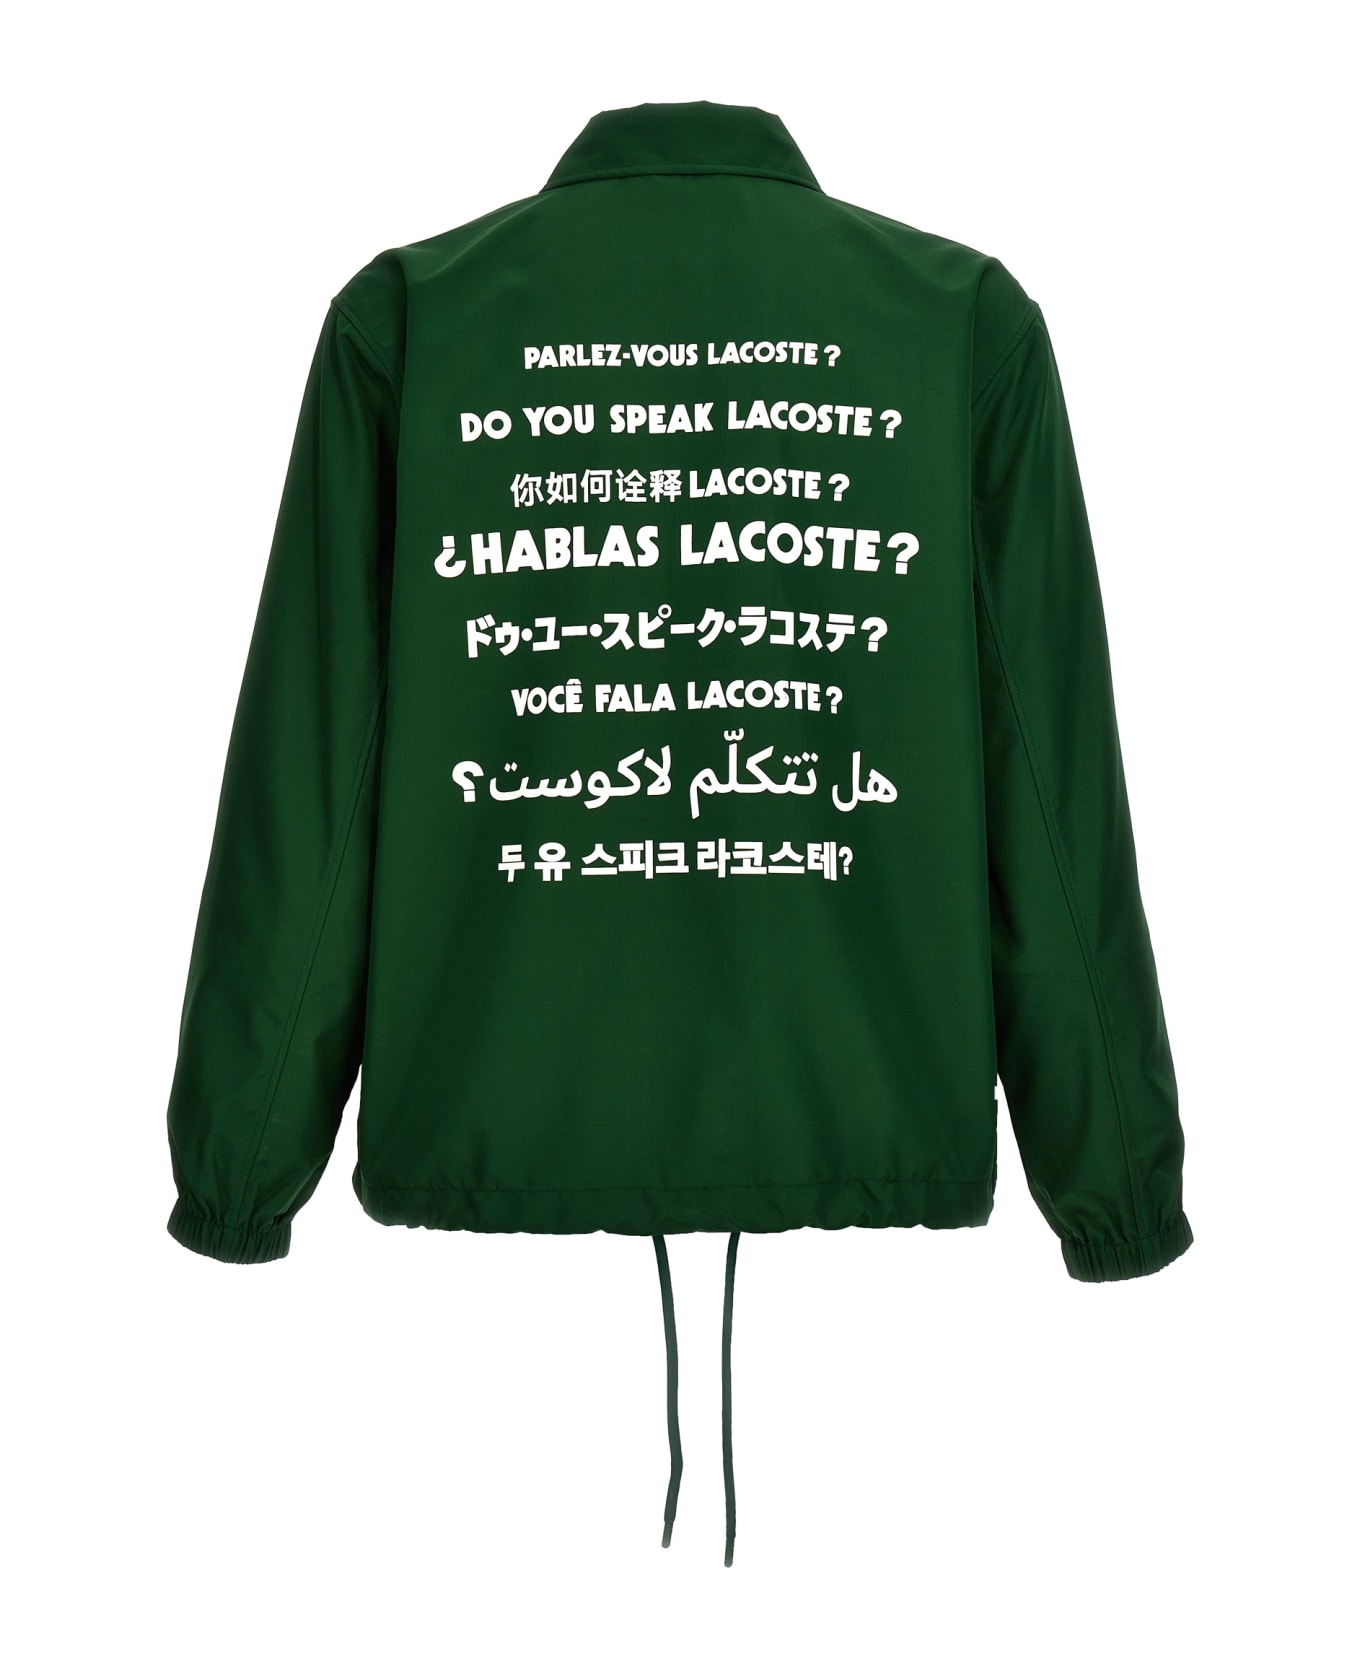 Lacoste 'do You Speak Lacoste?' Jacket - Green